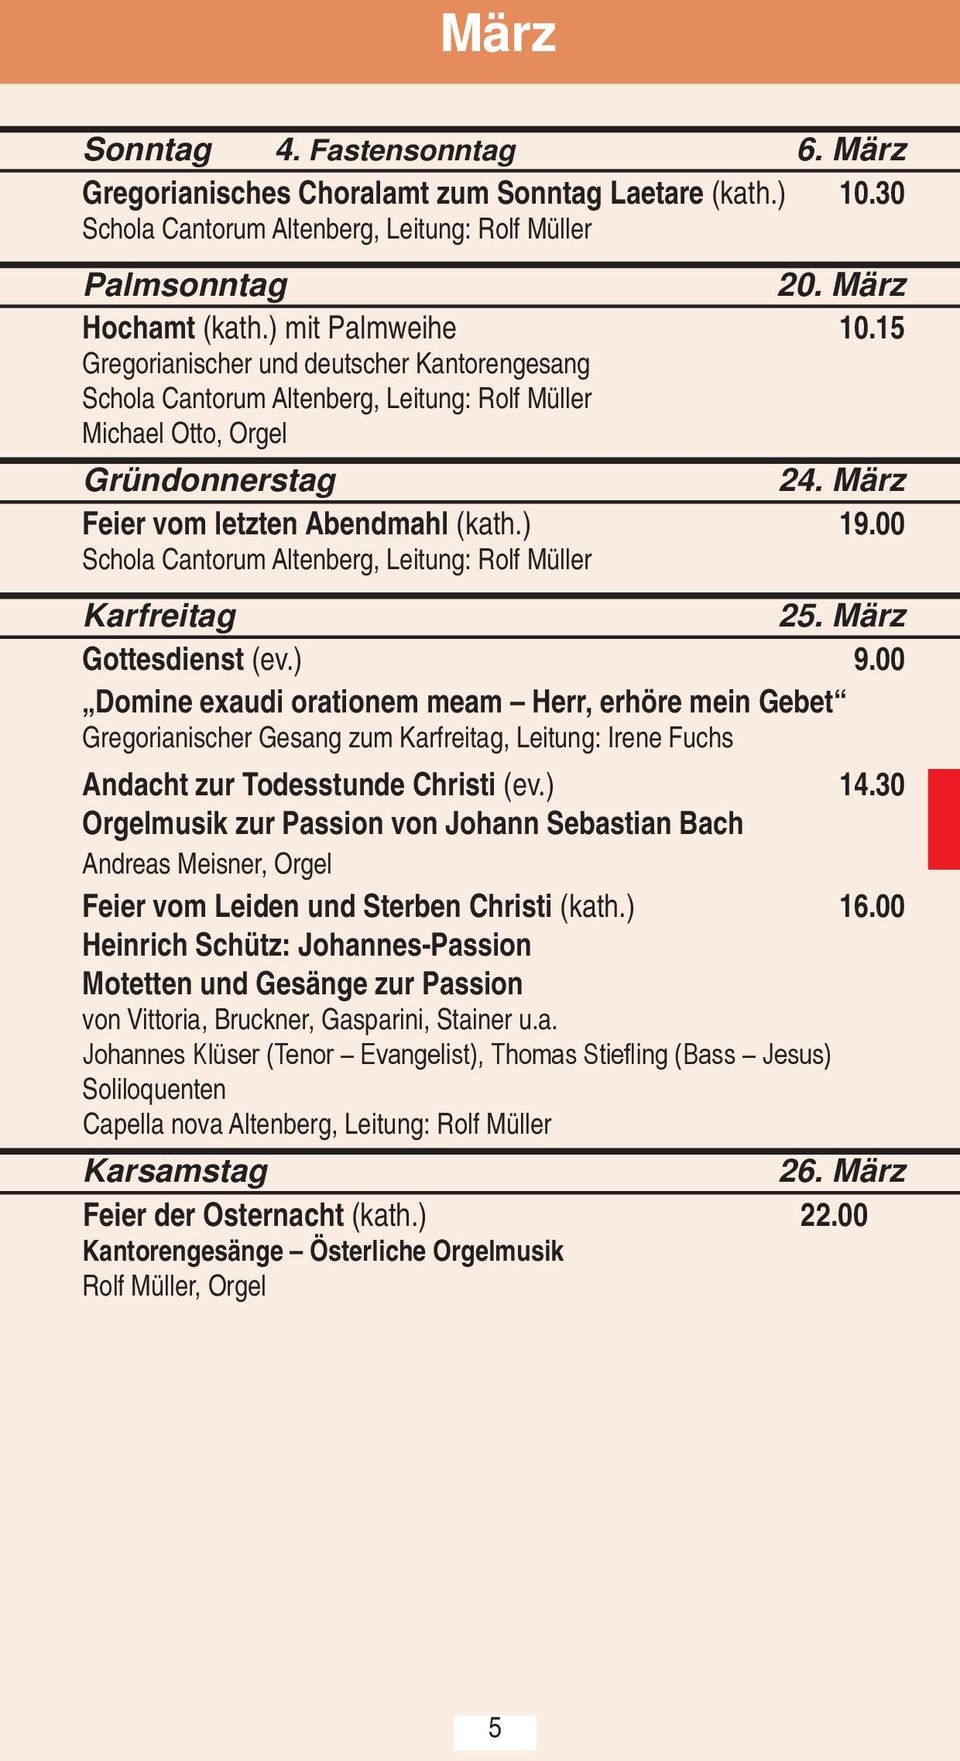 00 Schola Cantorum Altenberg, Leitung: Rolf Müller Karfreitag 25. März Gottesdienst (ev.) 9.